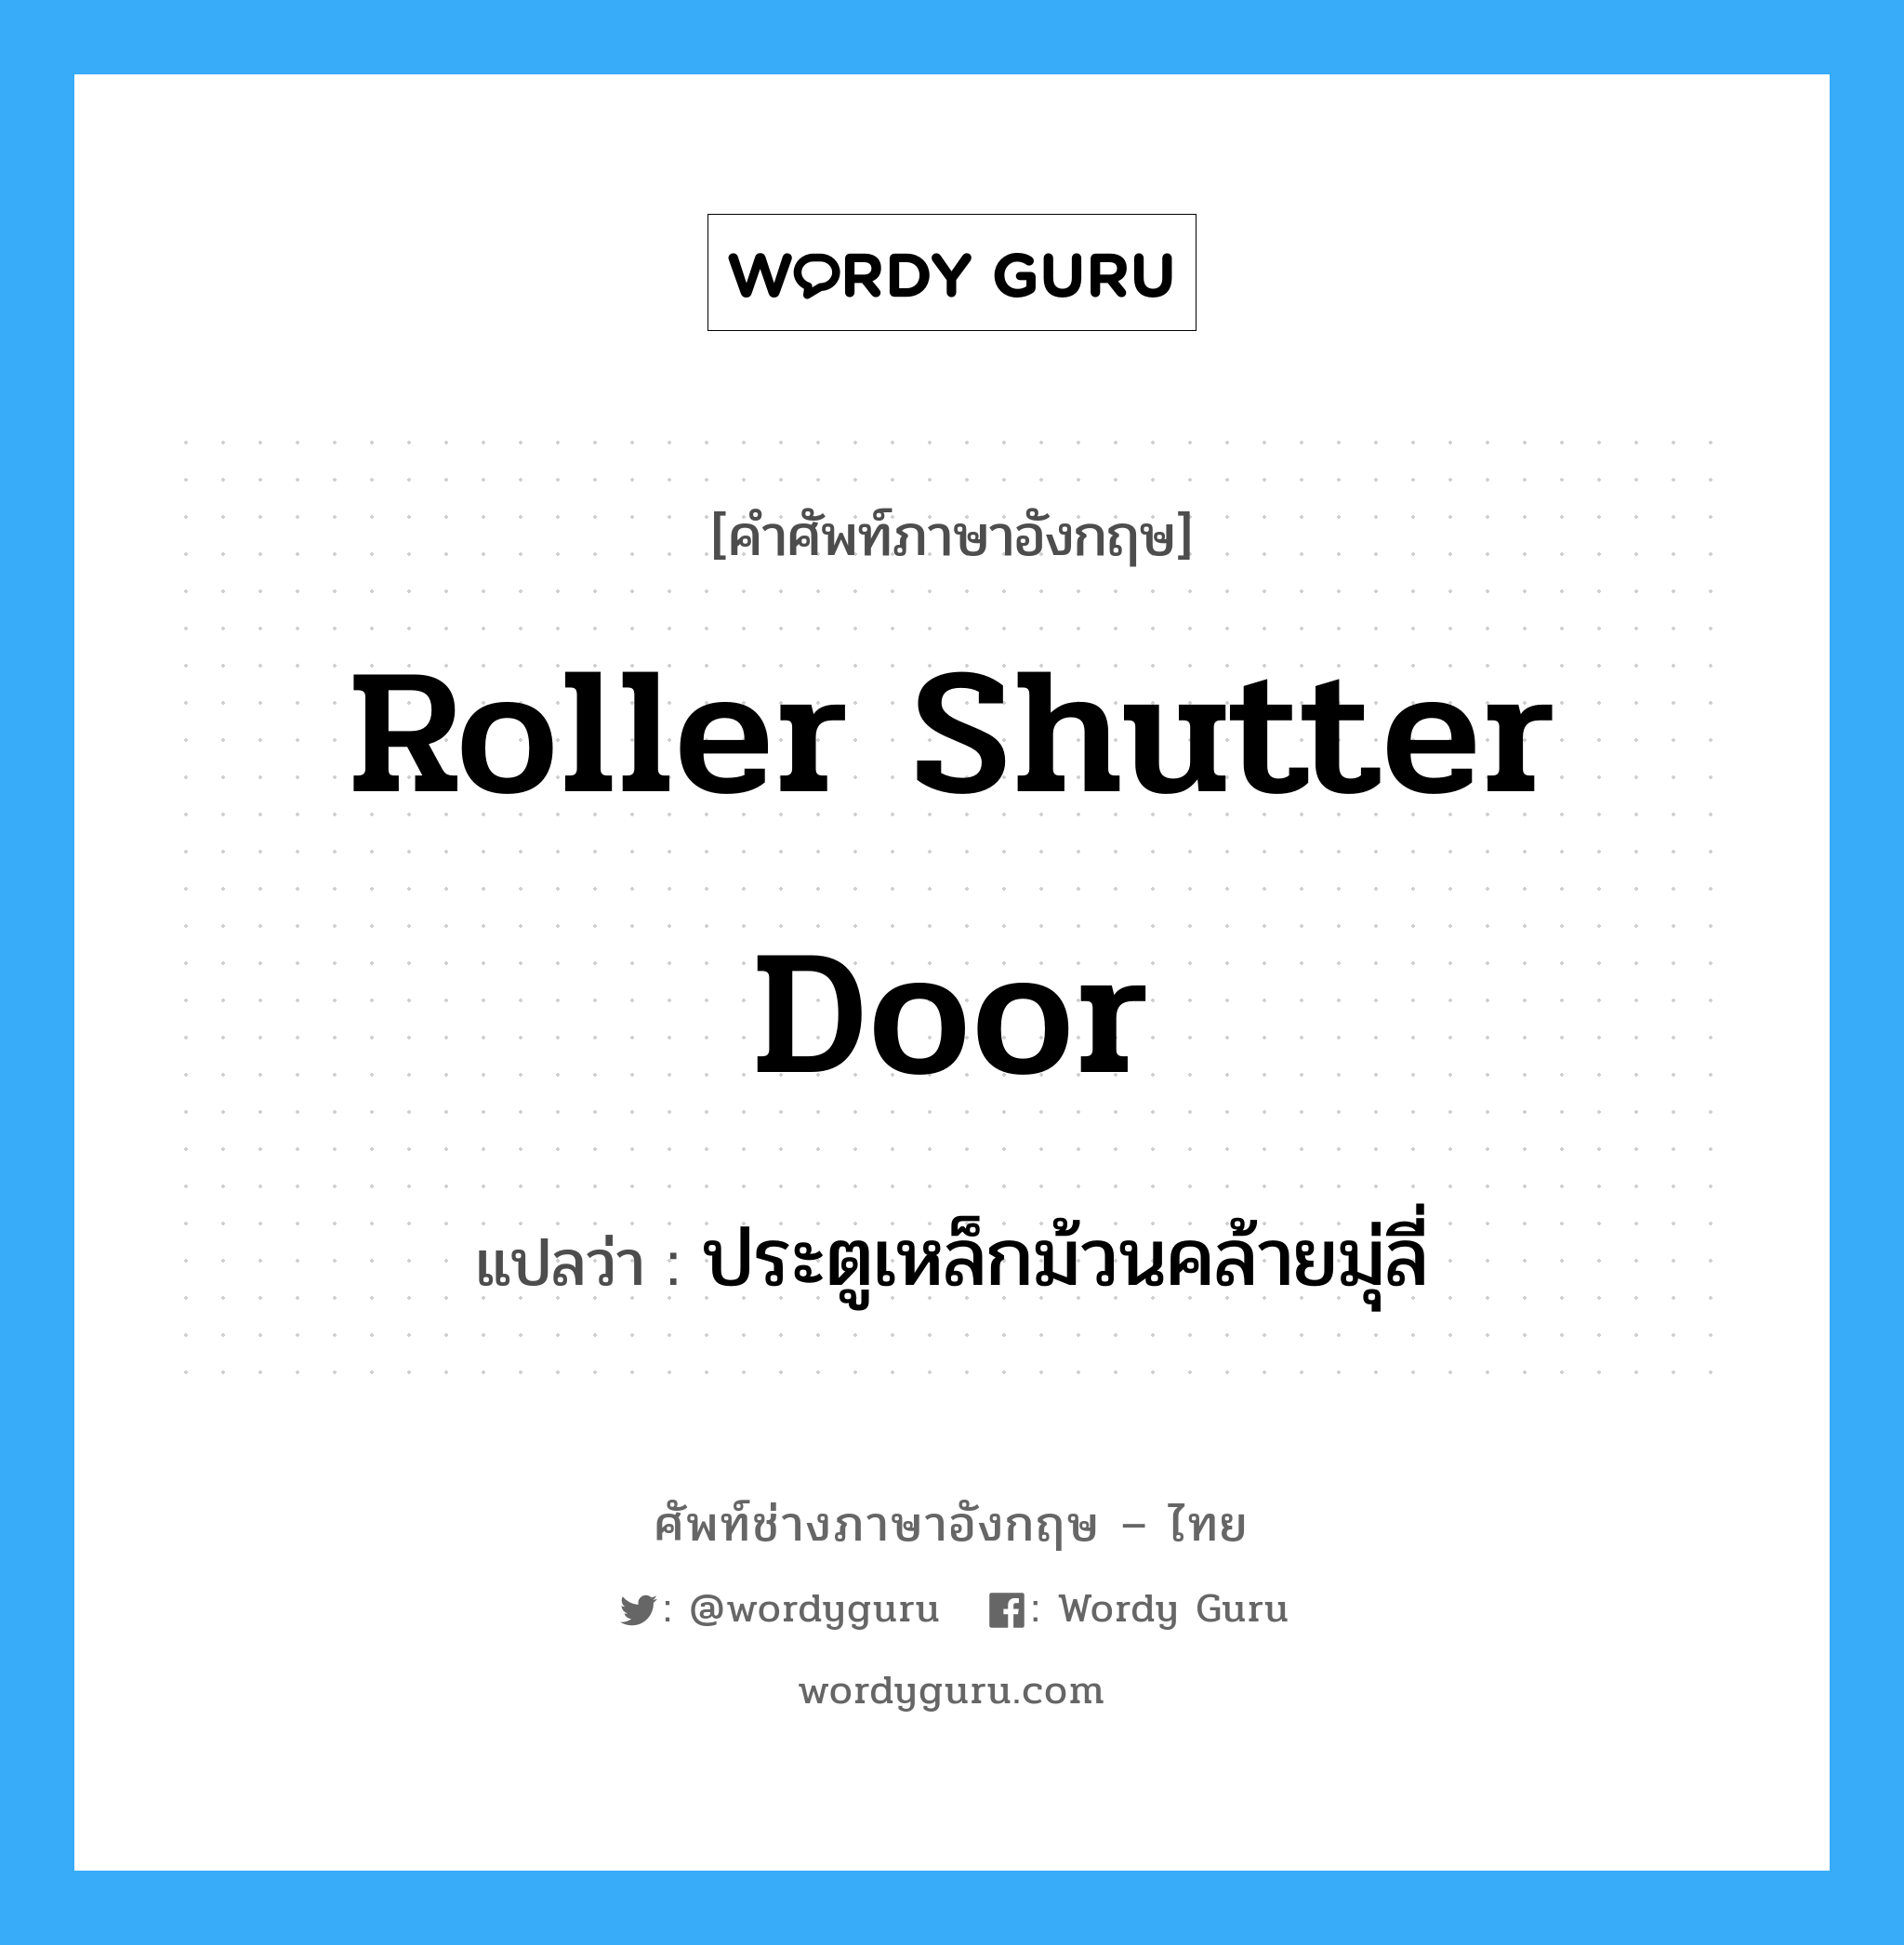 roller shutter door แปลว่า?, คำศัพท์ช่างภาษาอังกฤษ - ไทย roller shutter door คำศัพท์ภาษาอังกฤษ roller shutter door แปลว่า ประตูเหล็กม้วนคล้ายมุ่ลี่